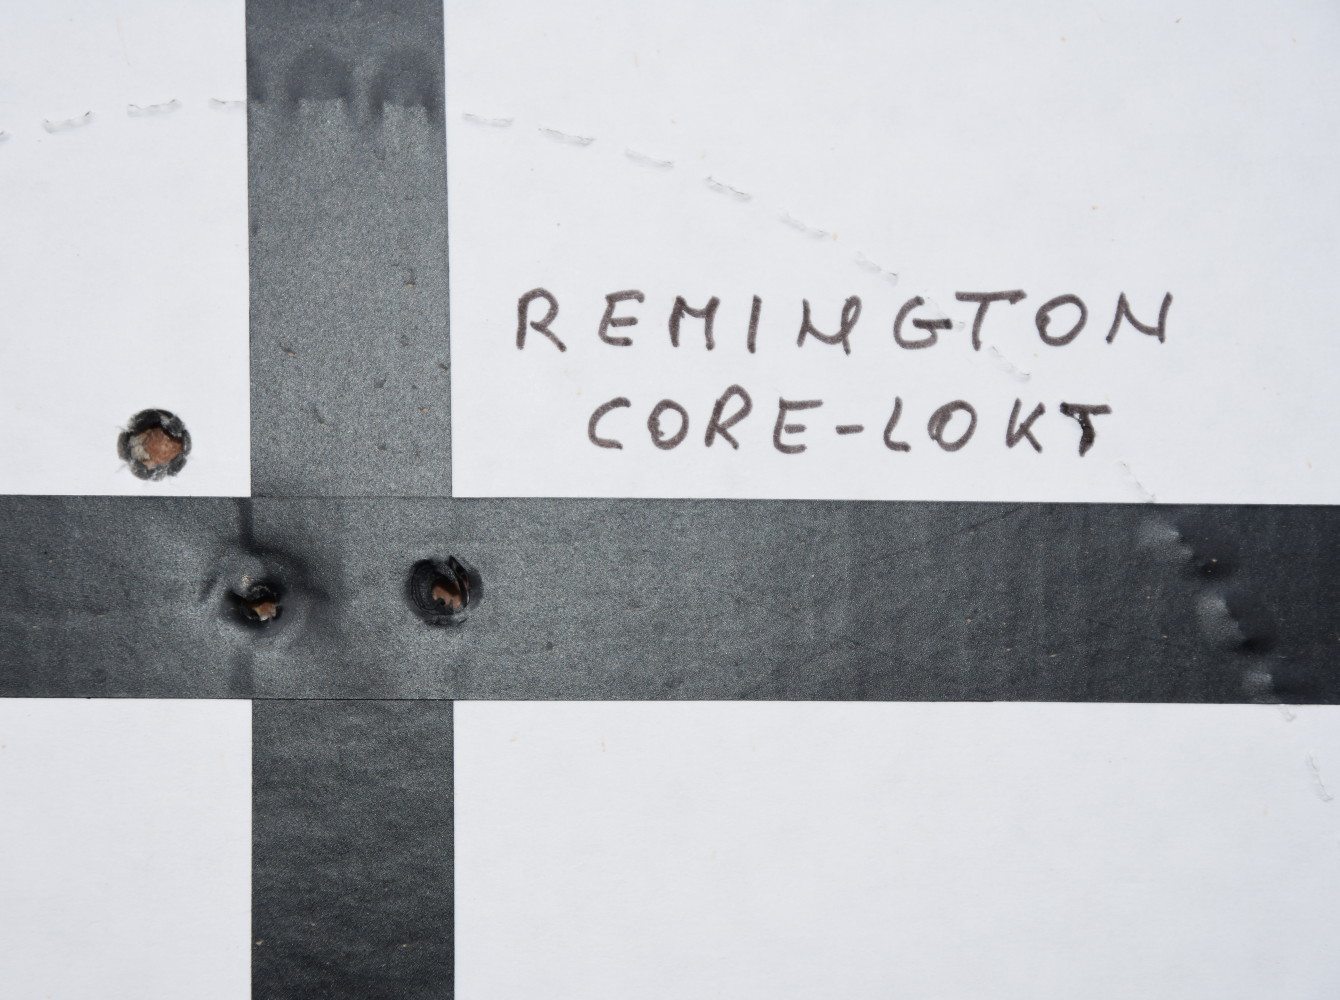 Remington Core-lokt 130 grains